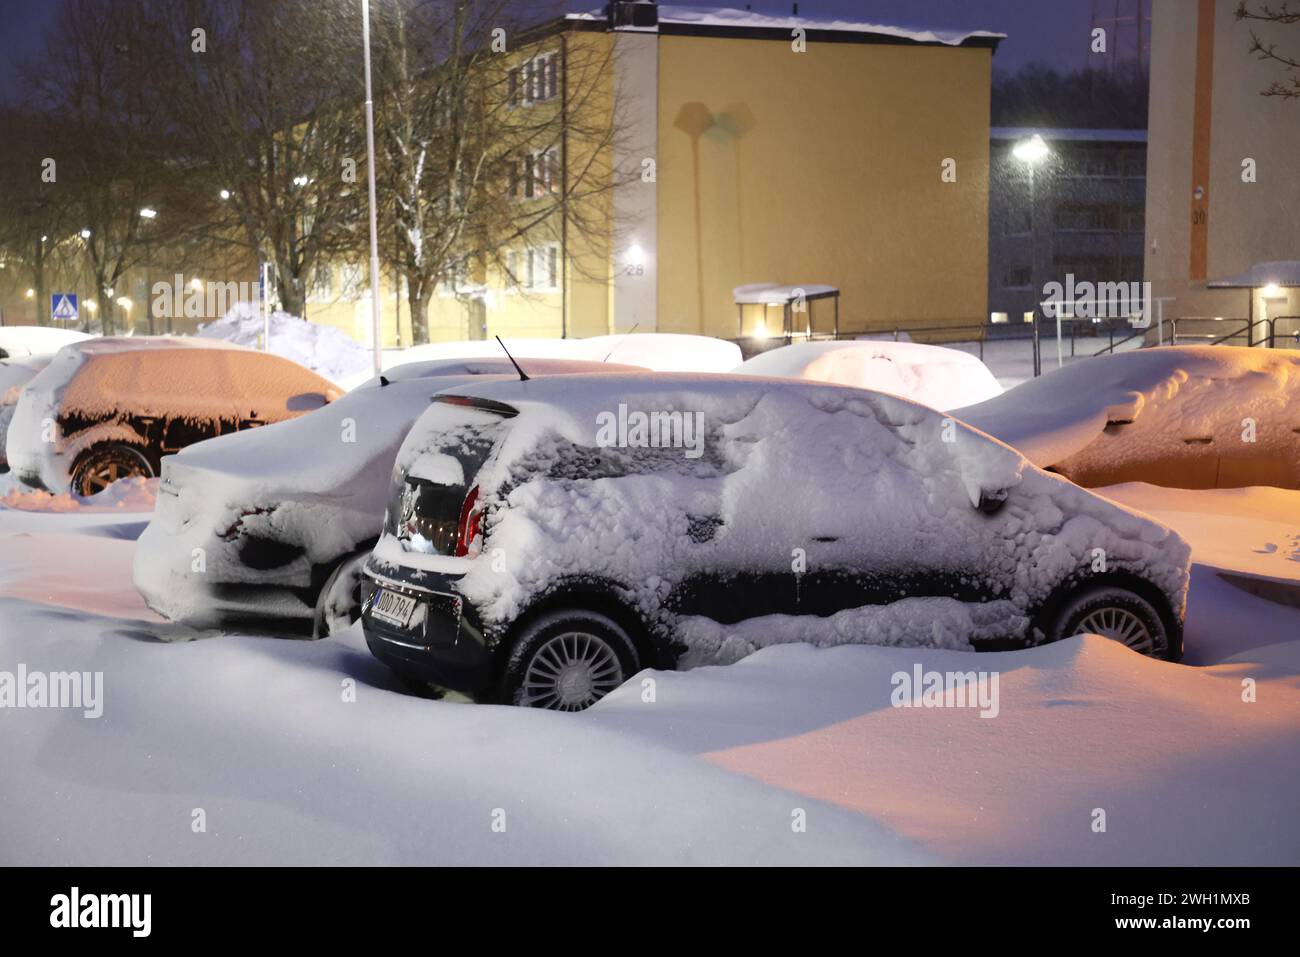 Météo saisonnière, fortes chutes de neige sur le comté de Östergötland, Suède, mercredi matin. Voitures enneigées sur un parking dans un quartier résidentiel. Banque D'Images